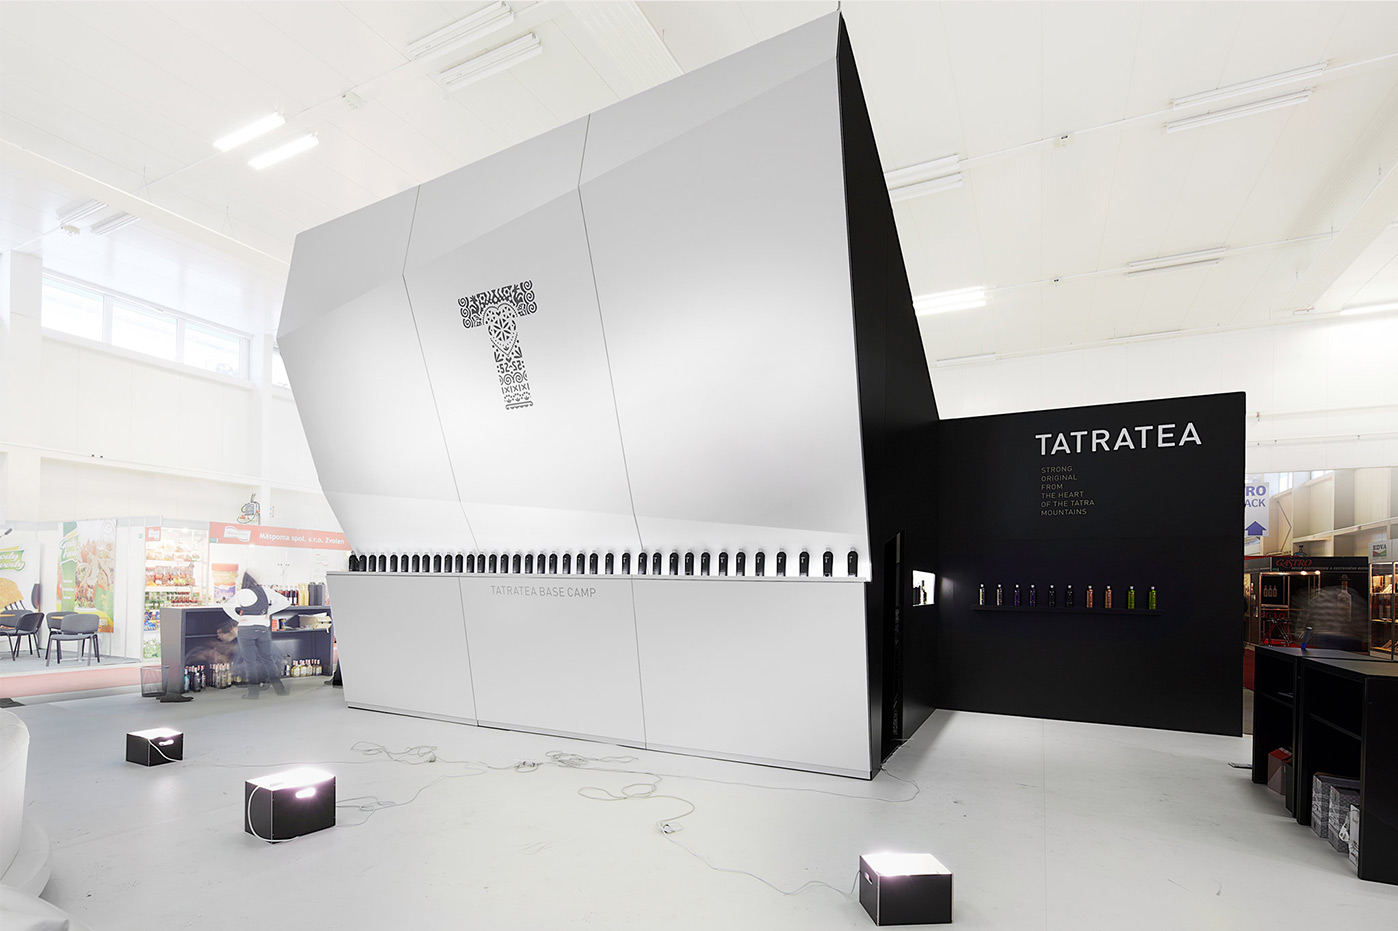 Dizajn Tatratea výstavný stánok | výstavníctvo | interiérový dizajnVývoj pedálov Pecobikes | priemyselný dizajn | produktový dizajn | dizajn produktov | dizajn výrobkov